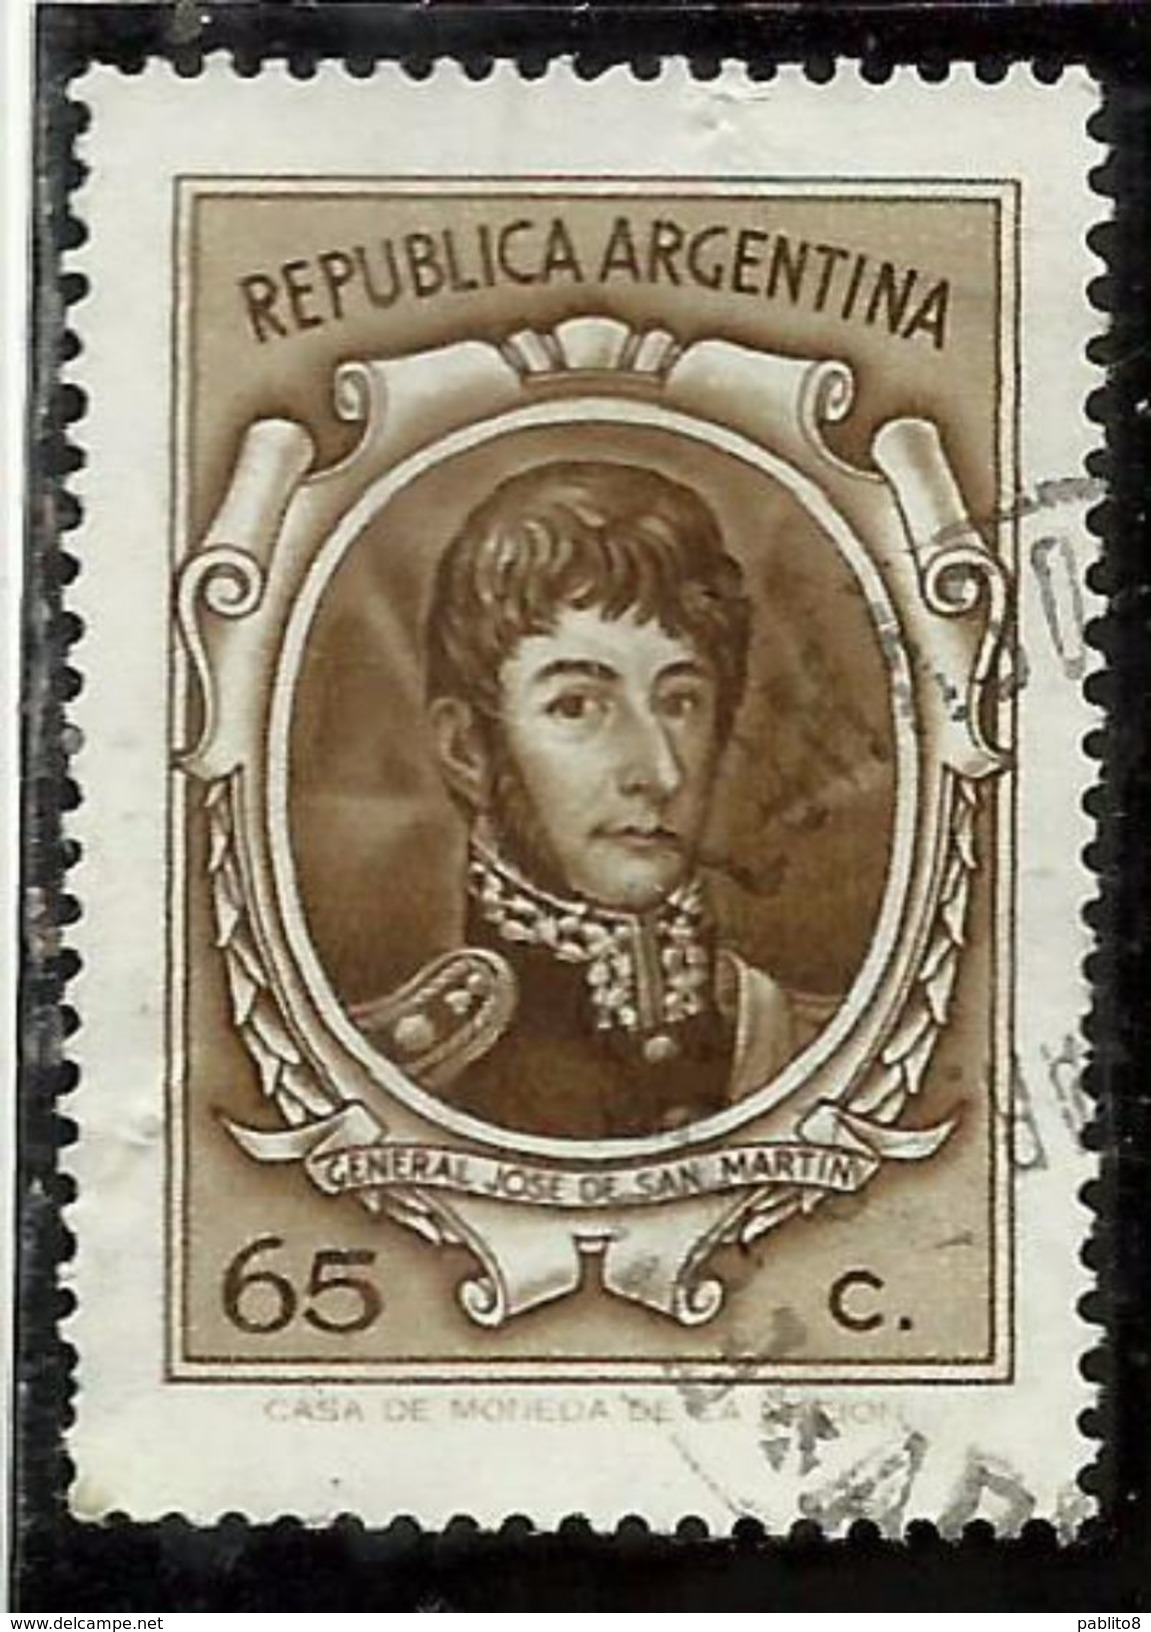 ARGENTINA 1970 1973 GENERAL JOSE DE SAN MARTIN 1971 GENERALE CENT. 65 USATO USED OBLITERE' - Usati